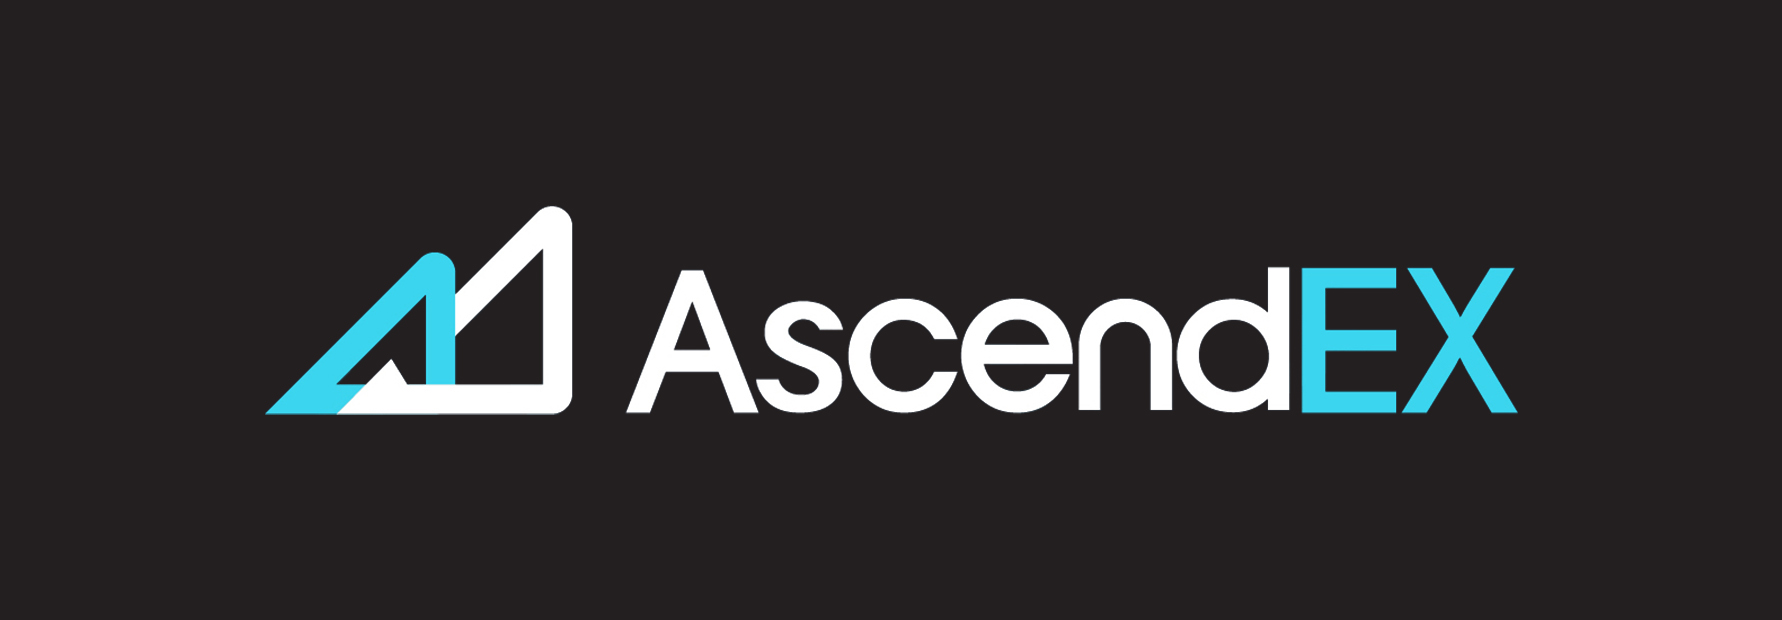 ascendex-logo.jpg